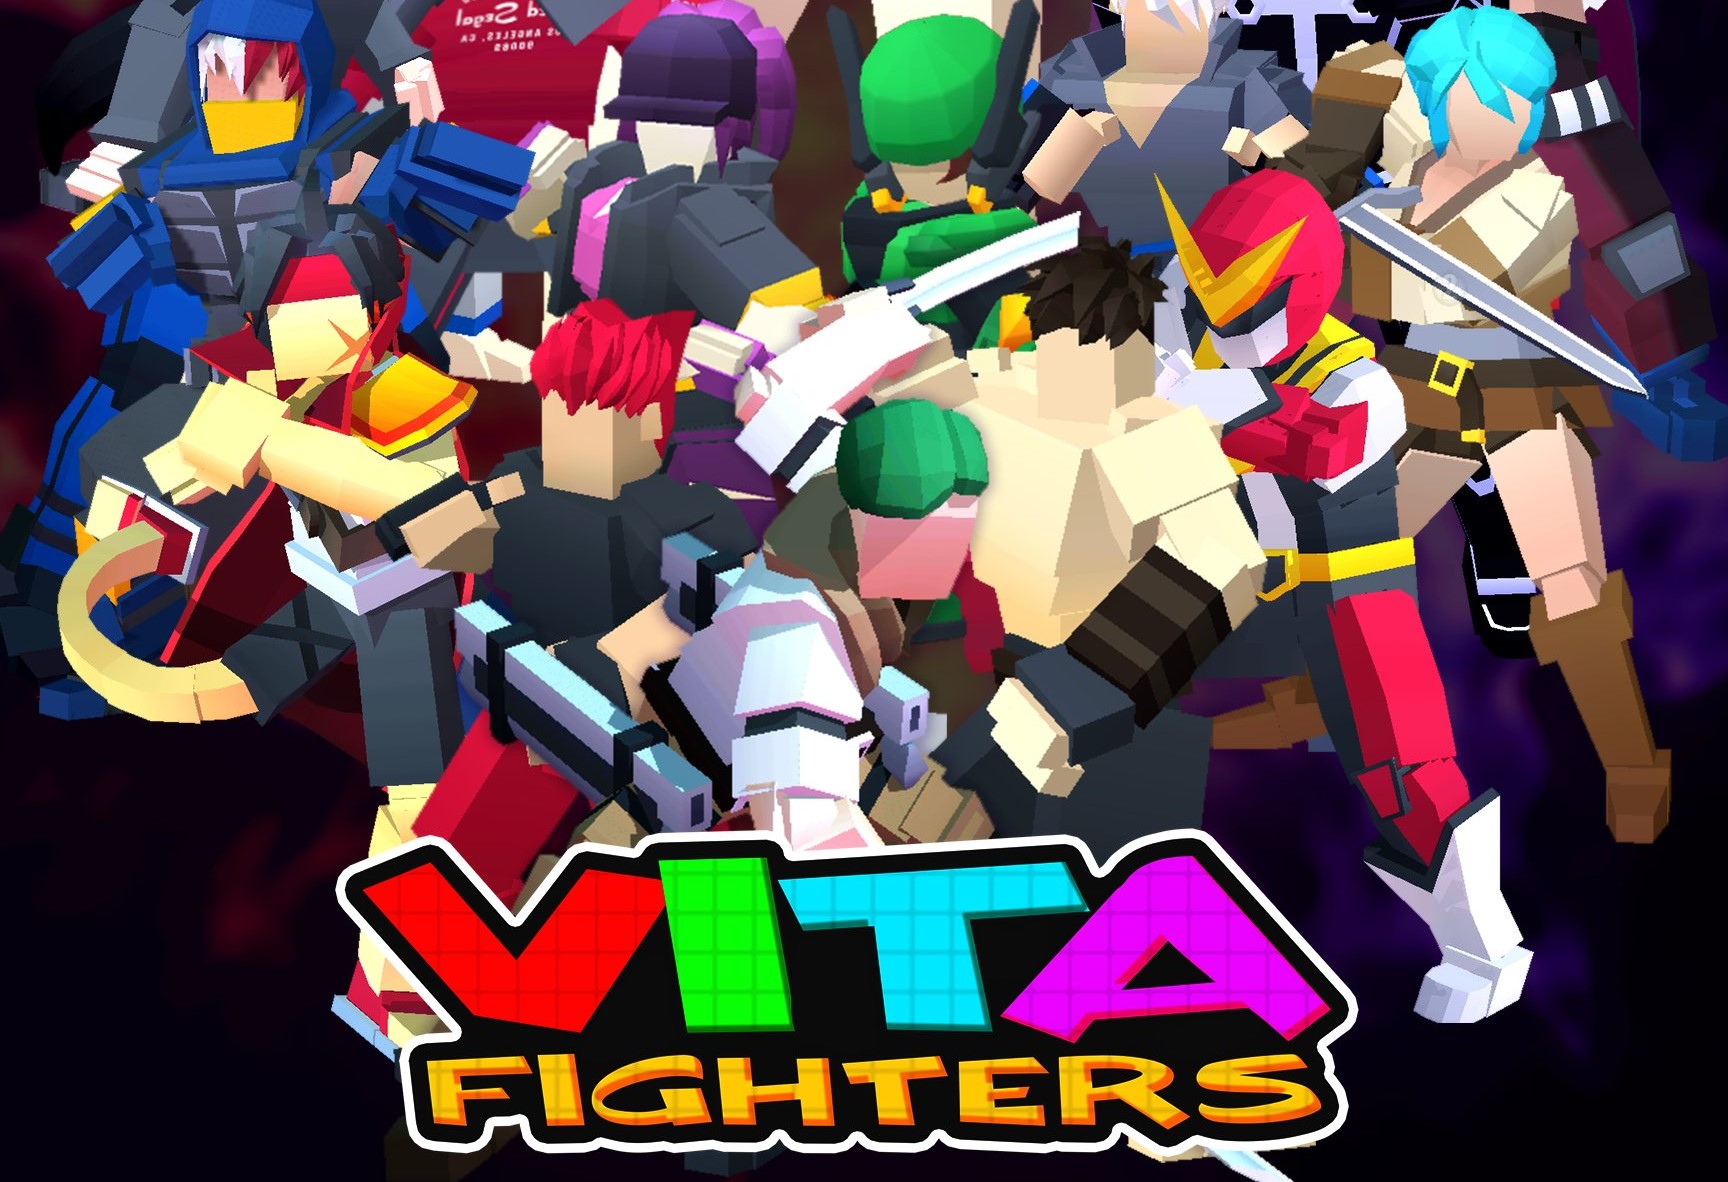 Vita Fighters cuenta con una extensa grilla de personajes inspirados en diferentes íconos de la cultura pop y héroes de distintos videojuegos (Foto: @VitaFighters)